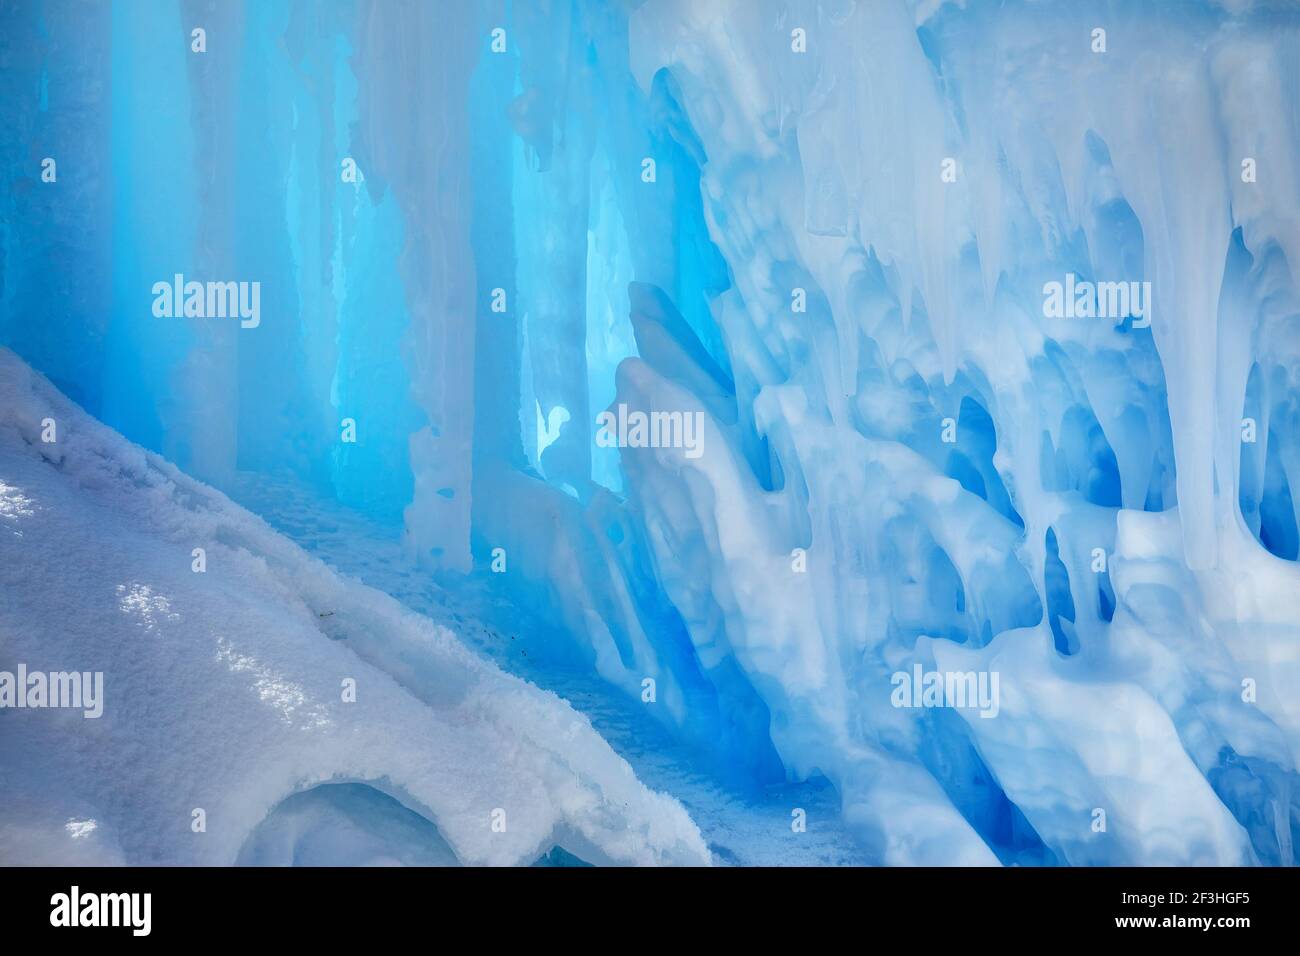 Cascade de montagne gelée avec texture idicles gros plan Banque D'Images